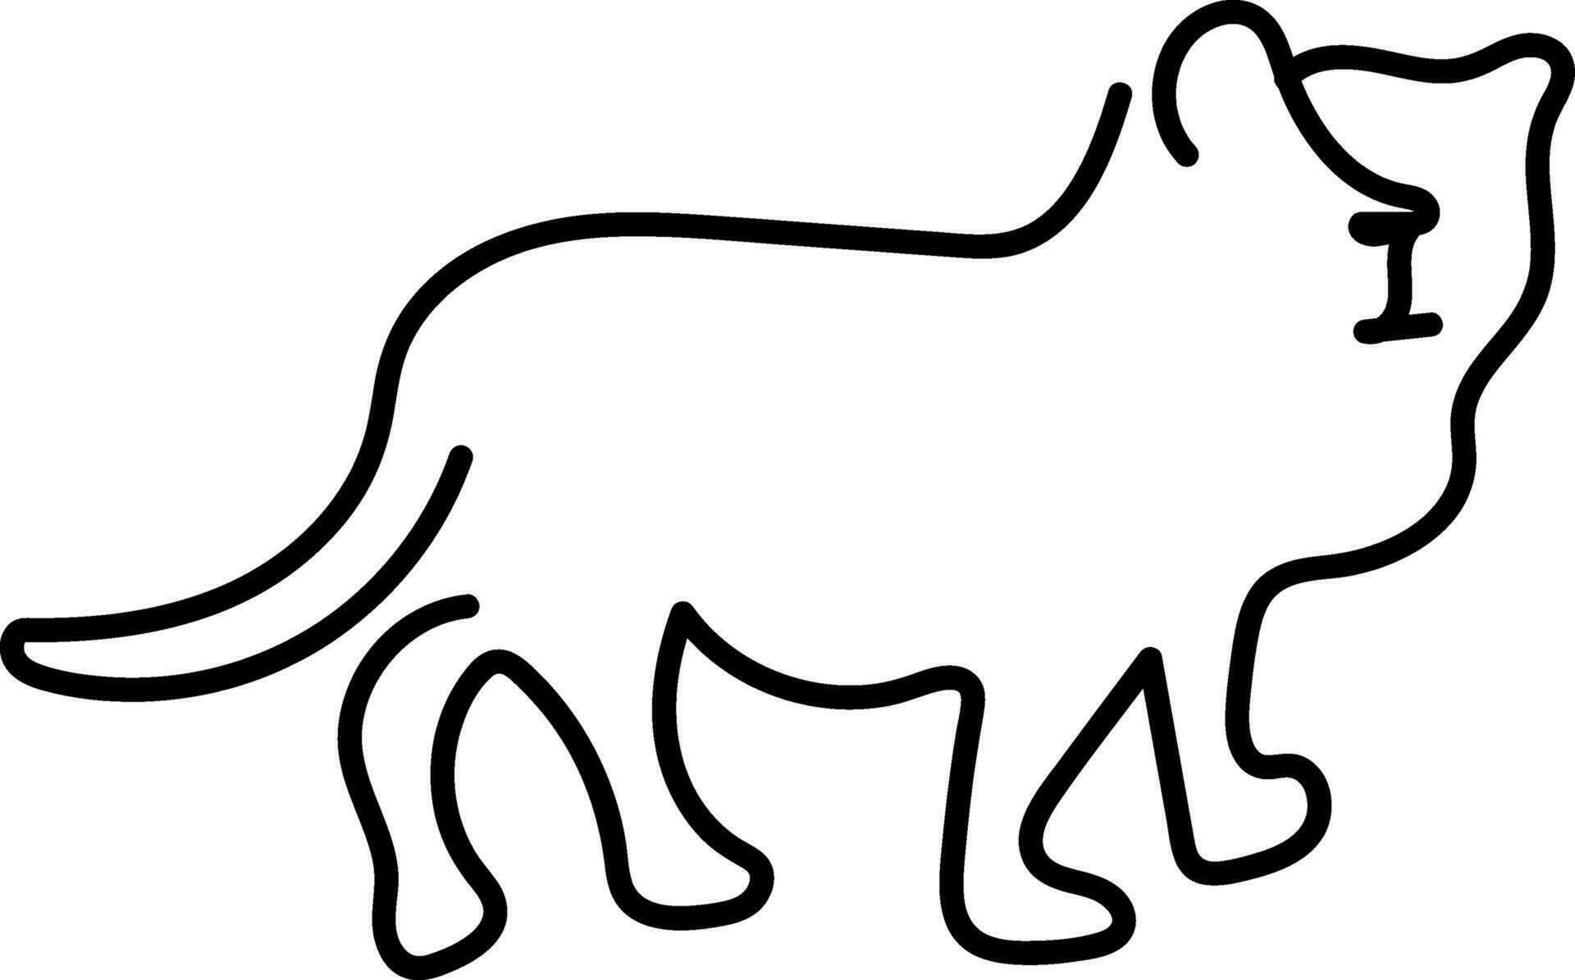 mundo animais selvagens dia, animal linha arte, contínuo 1 linha arte, desenhando vetor ilustração isolado em branco fundo.